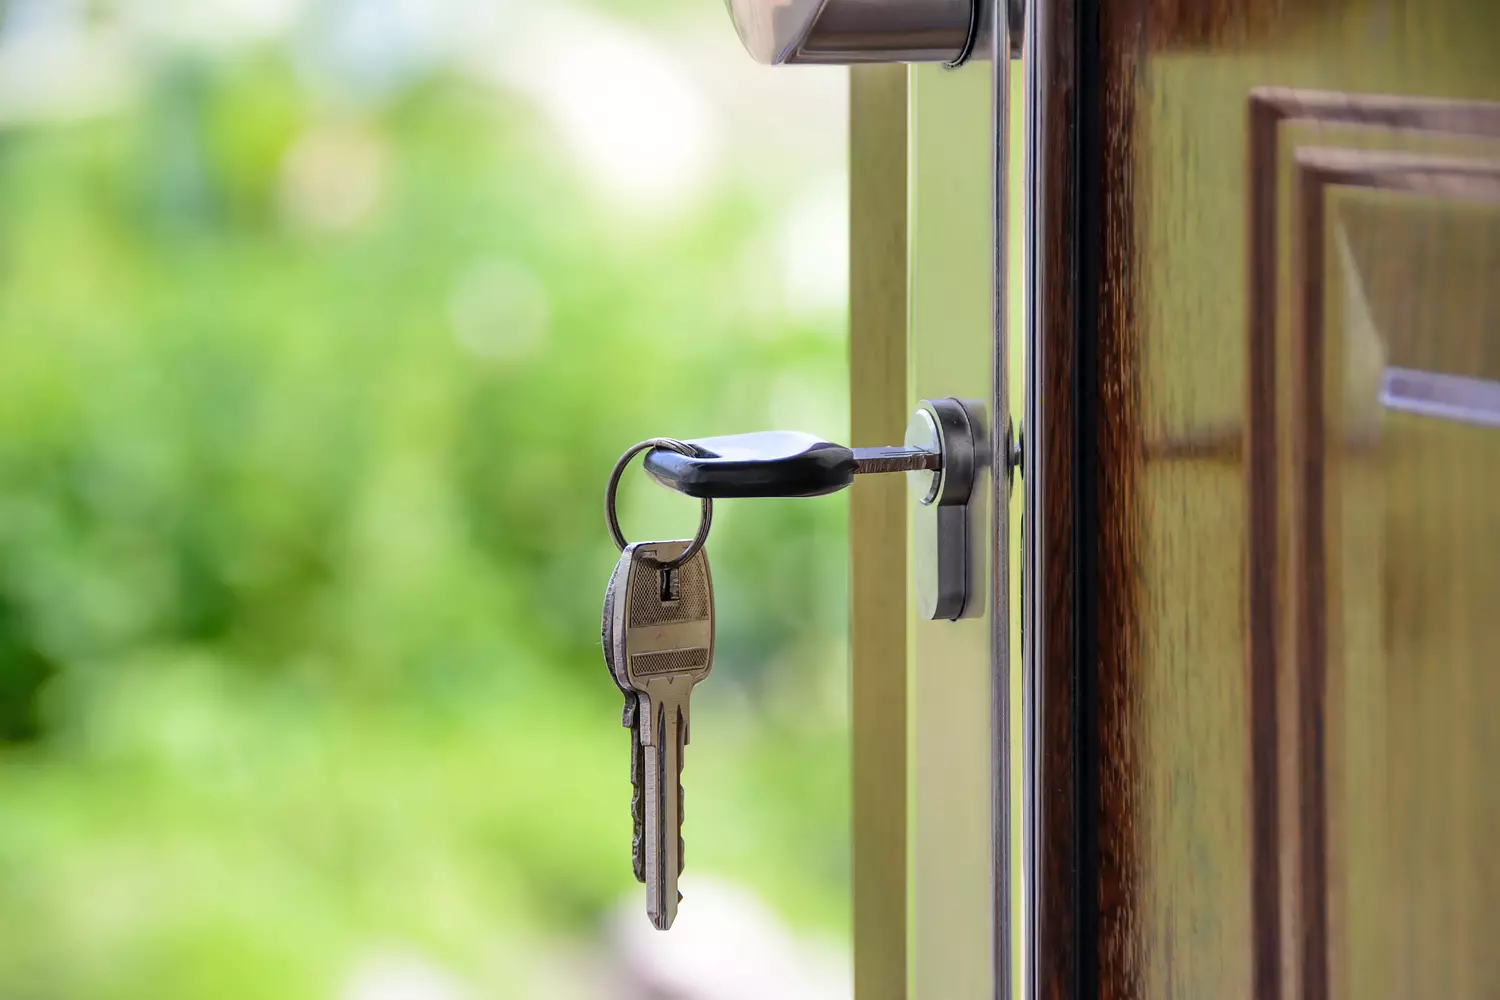 huis kopen met een studieschuld - sleutel in deur